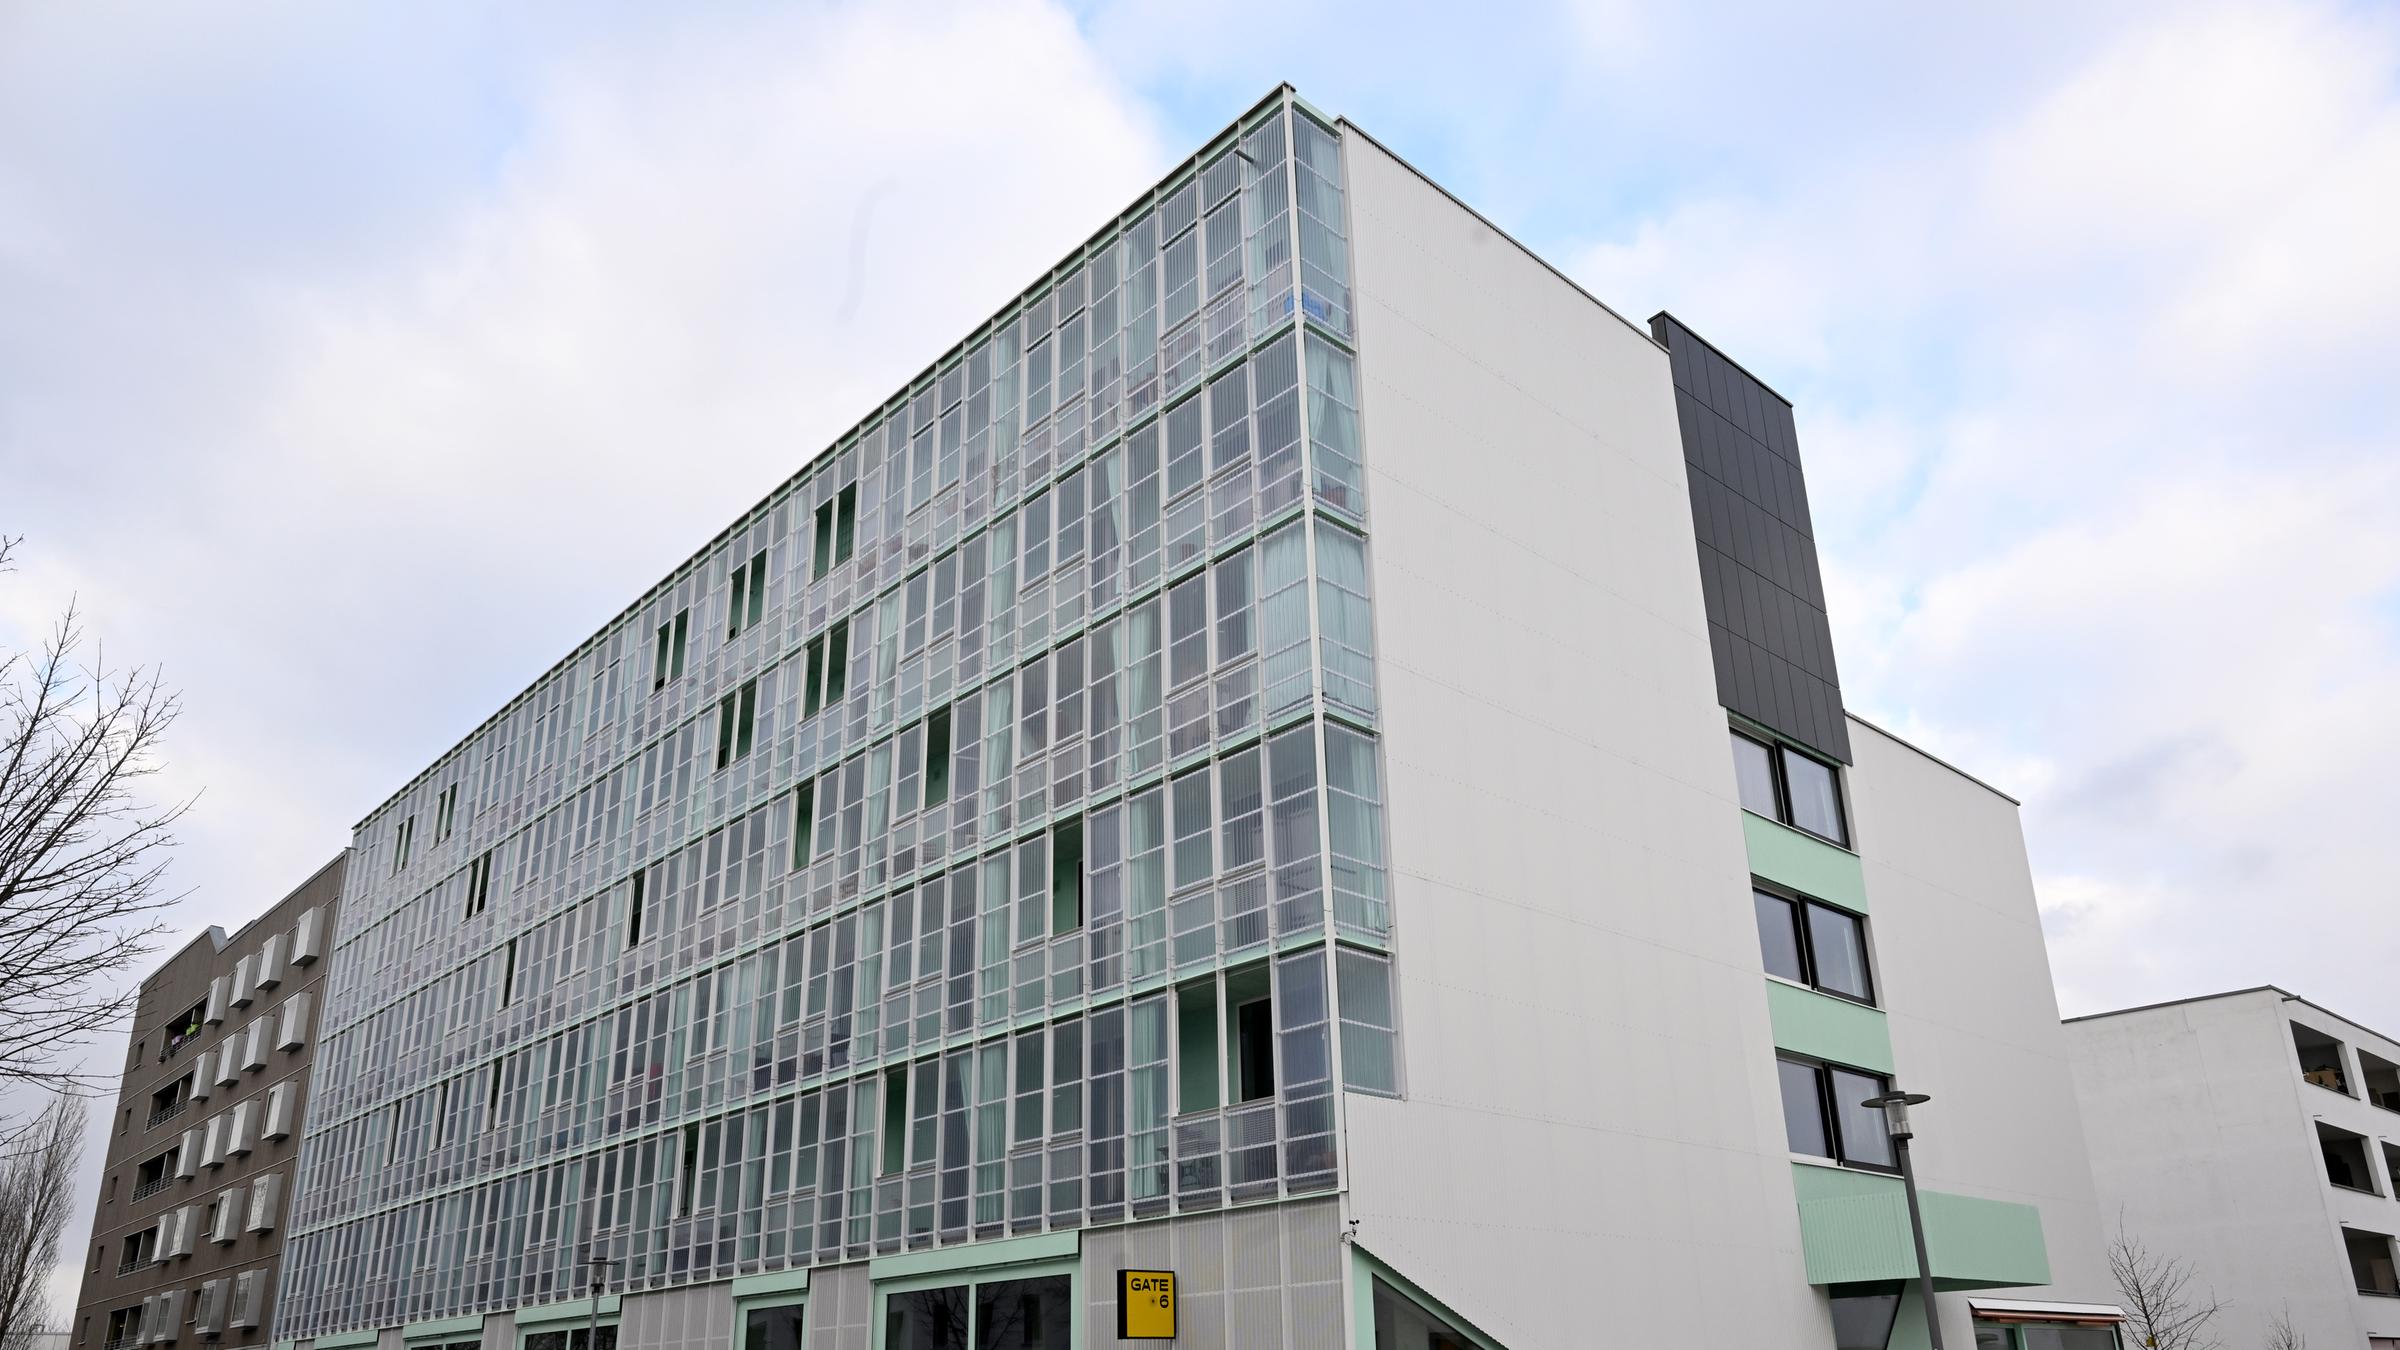 Der Neubau eines genossenschaftlichen Wohnhauses steht in München Riem....</p>

                        <a href=